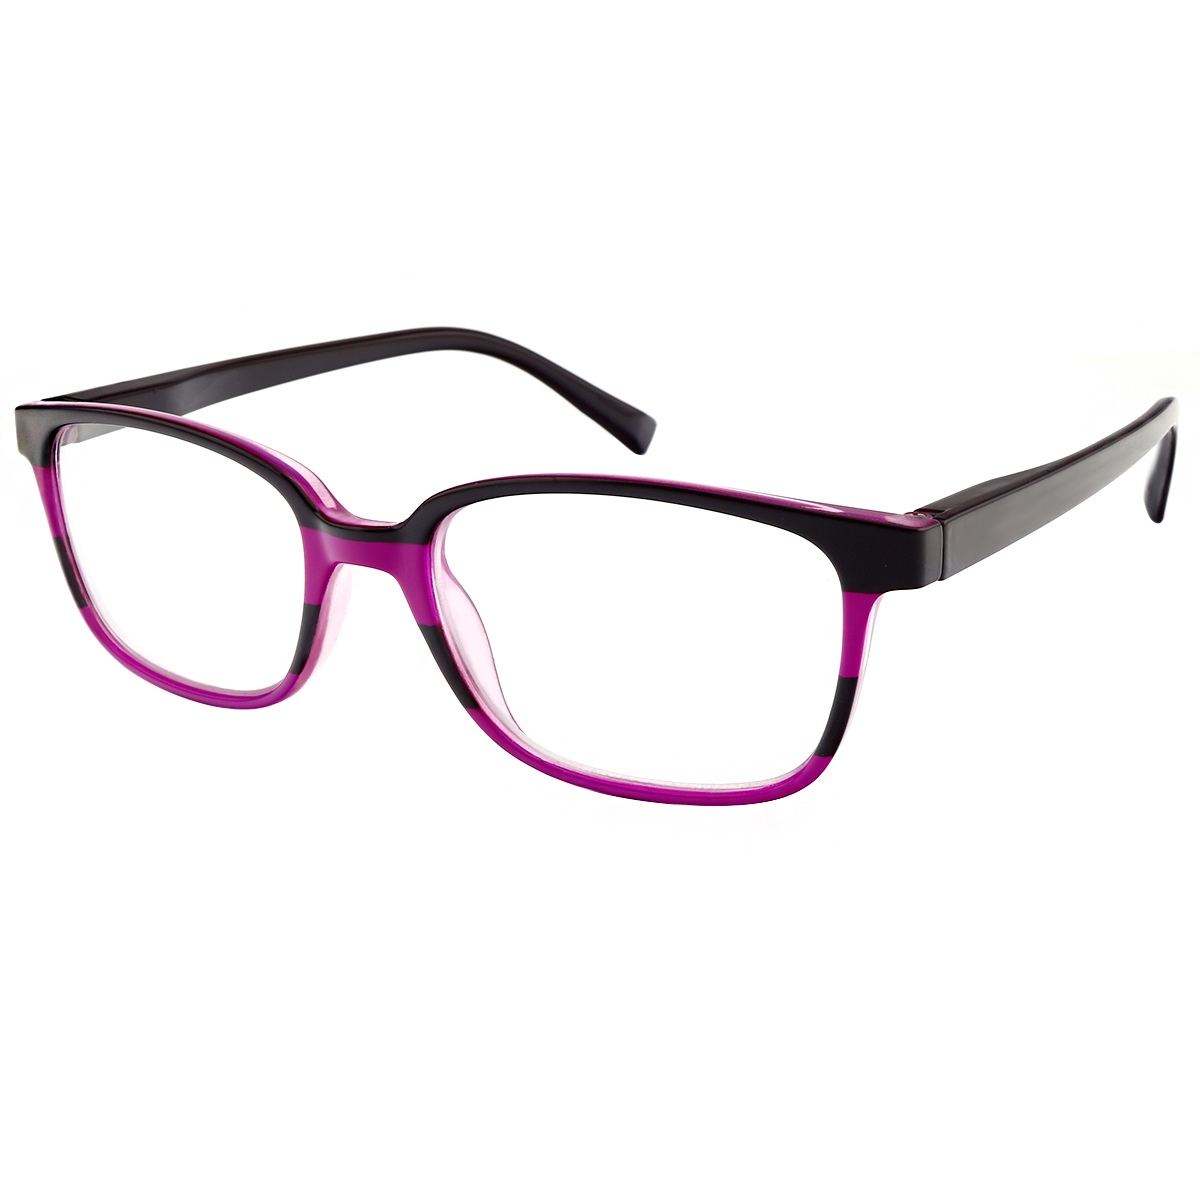 Lois - Rectangle Black-Pink Reading Glasses for Men & Women